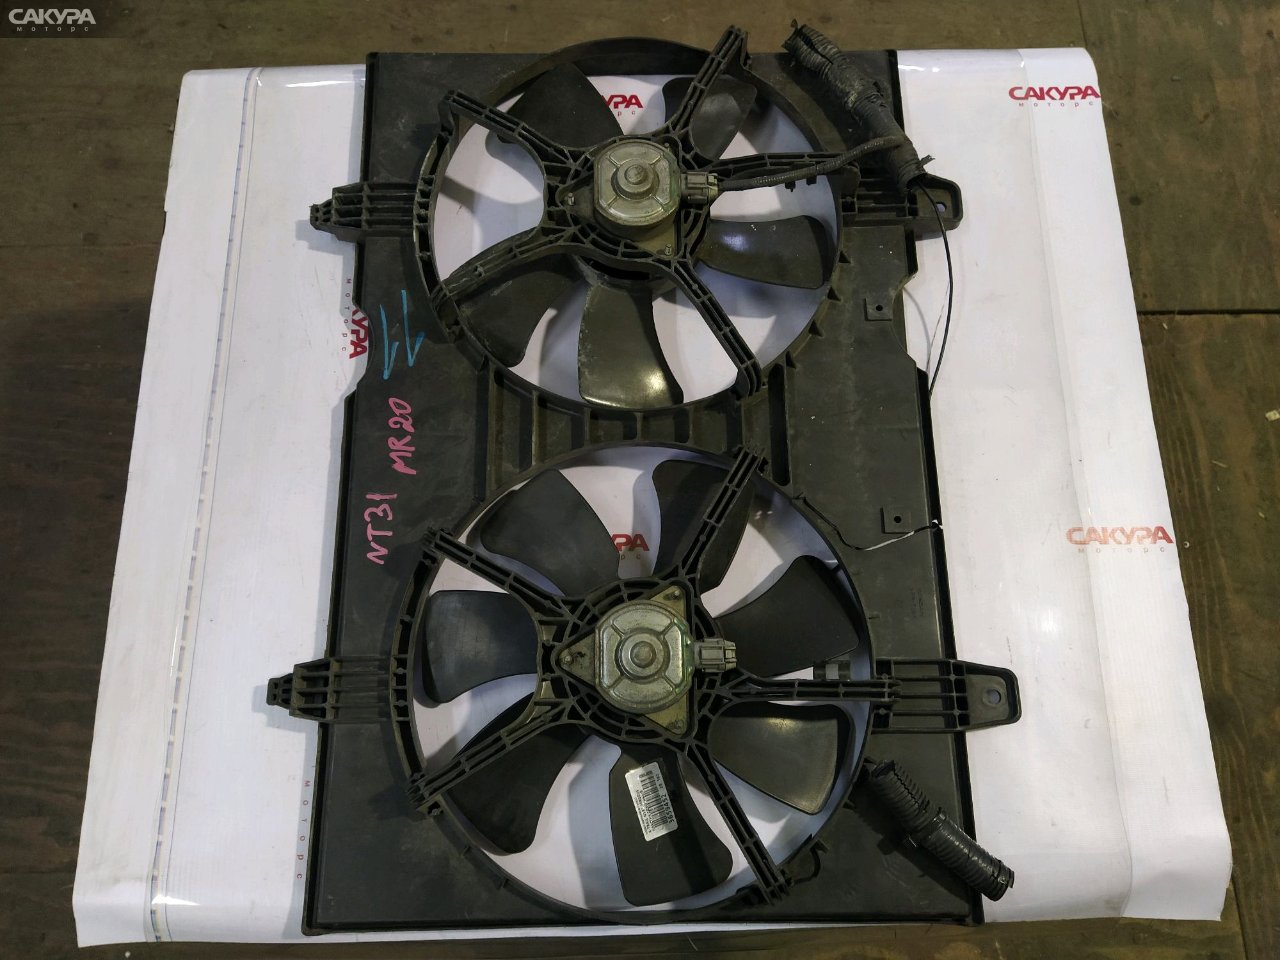 Вентилятор радиатора двигателя Nissan X-TRAIL NT31 MR20DE: купить в Сакура Красноярск.